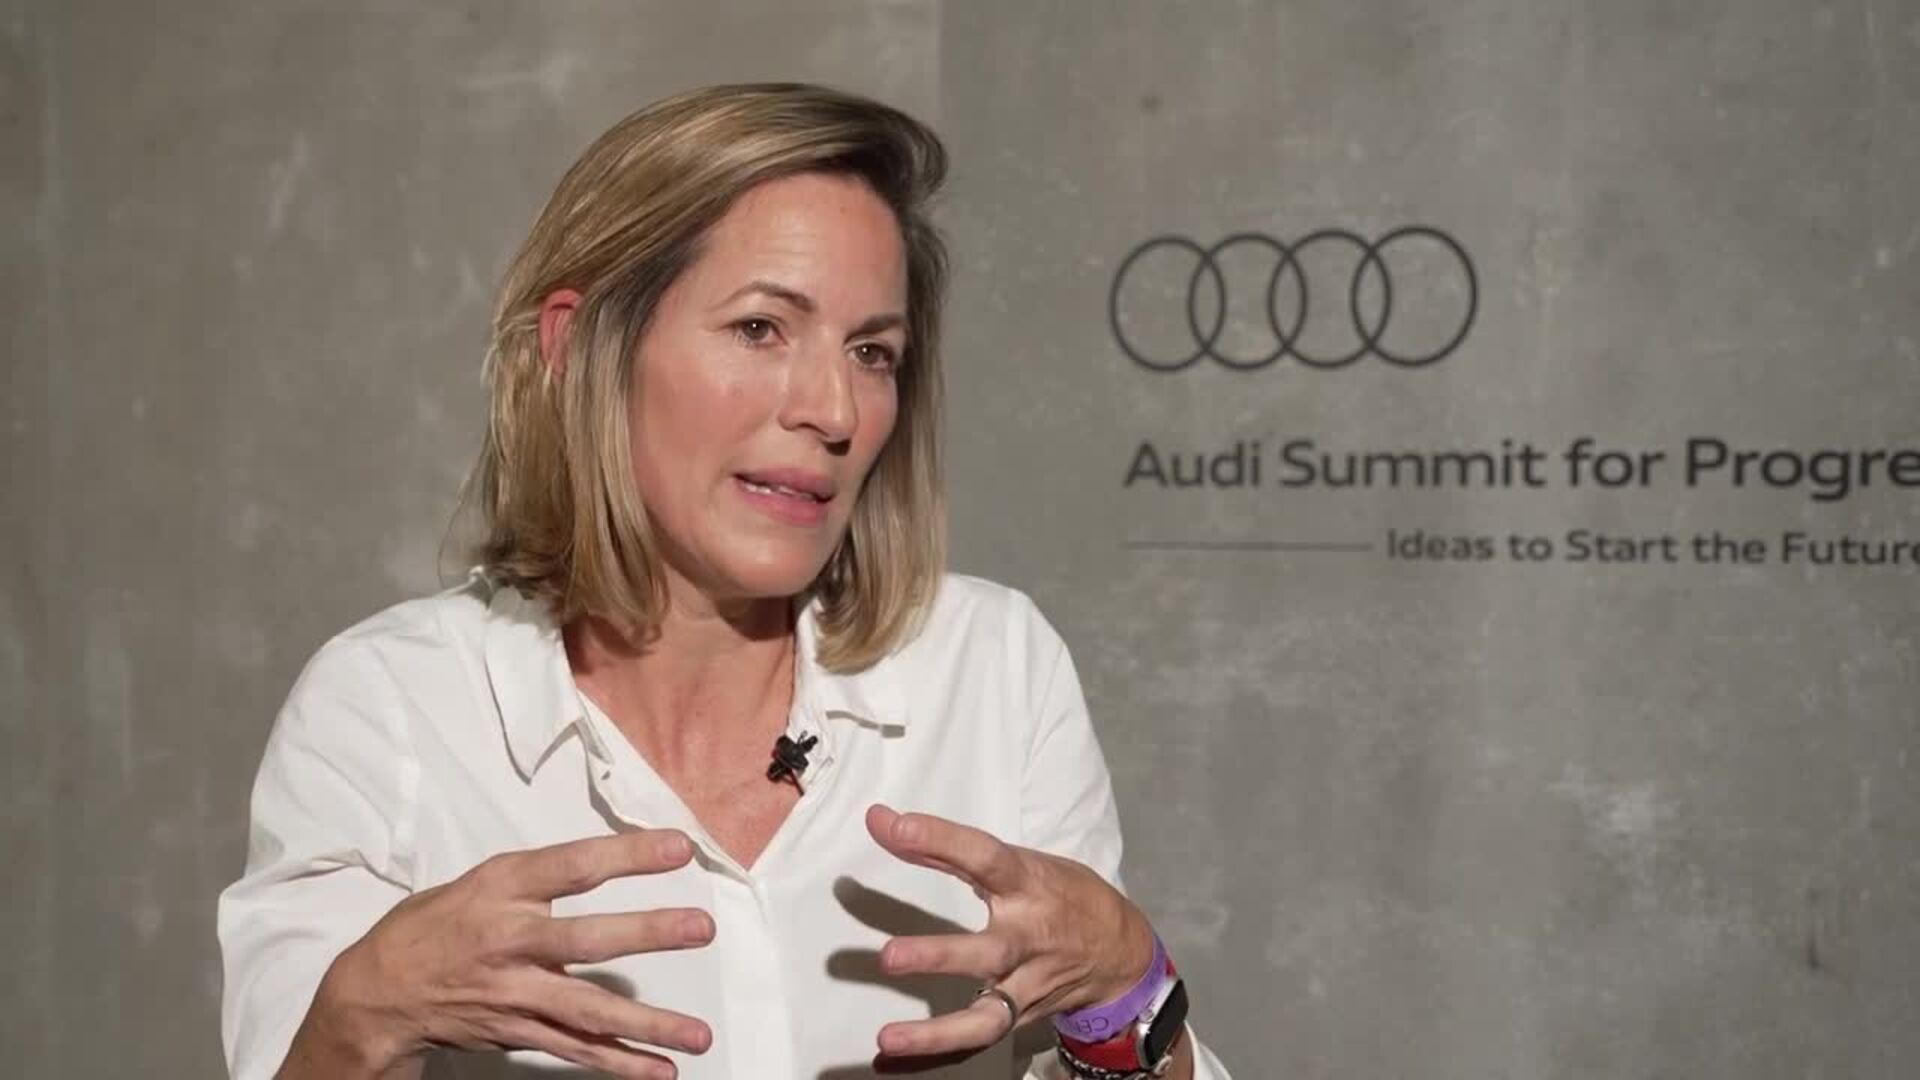 El Audi Summit for Progress congrega en Madrid a las mentes que cambiarán el mundo